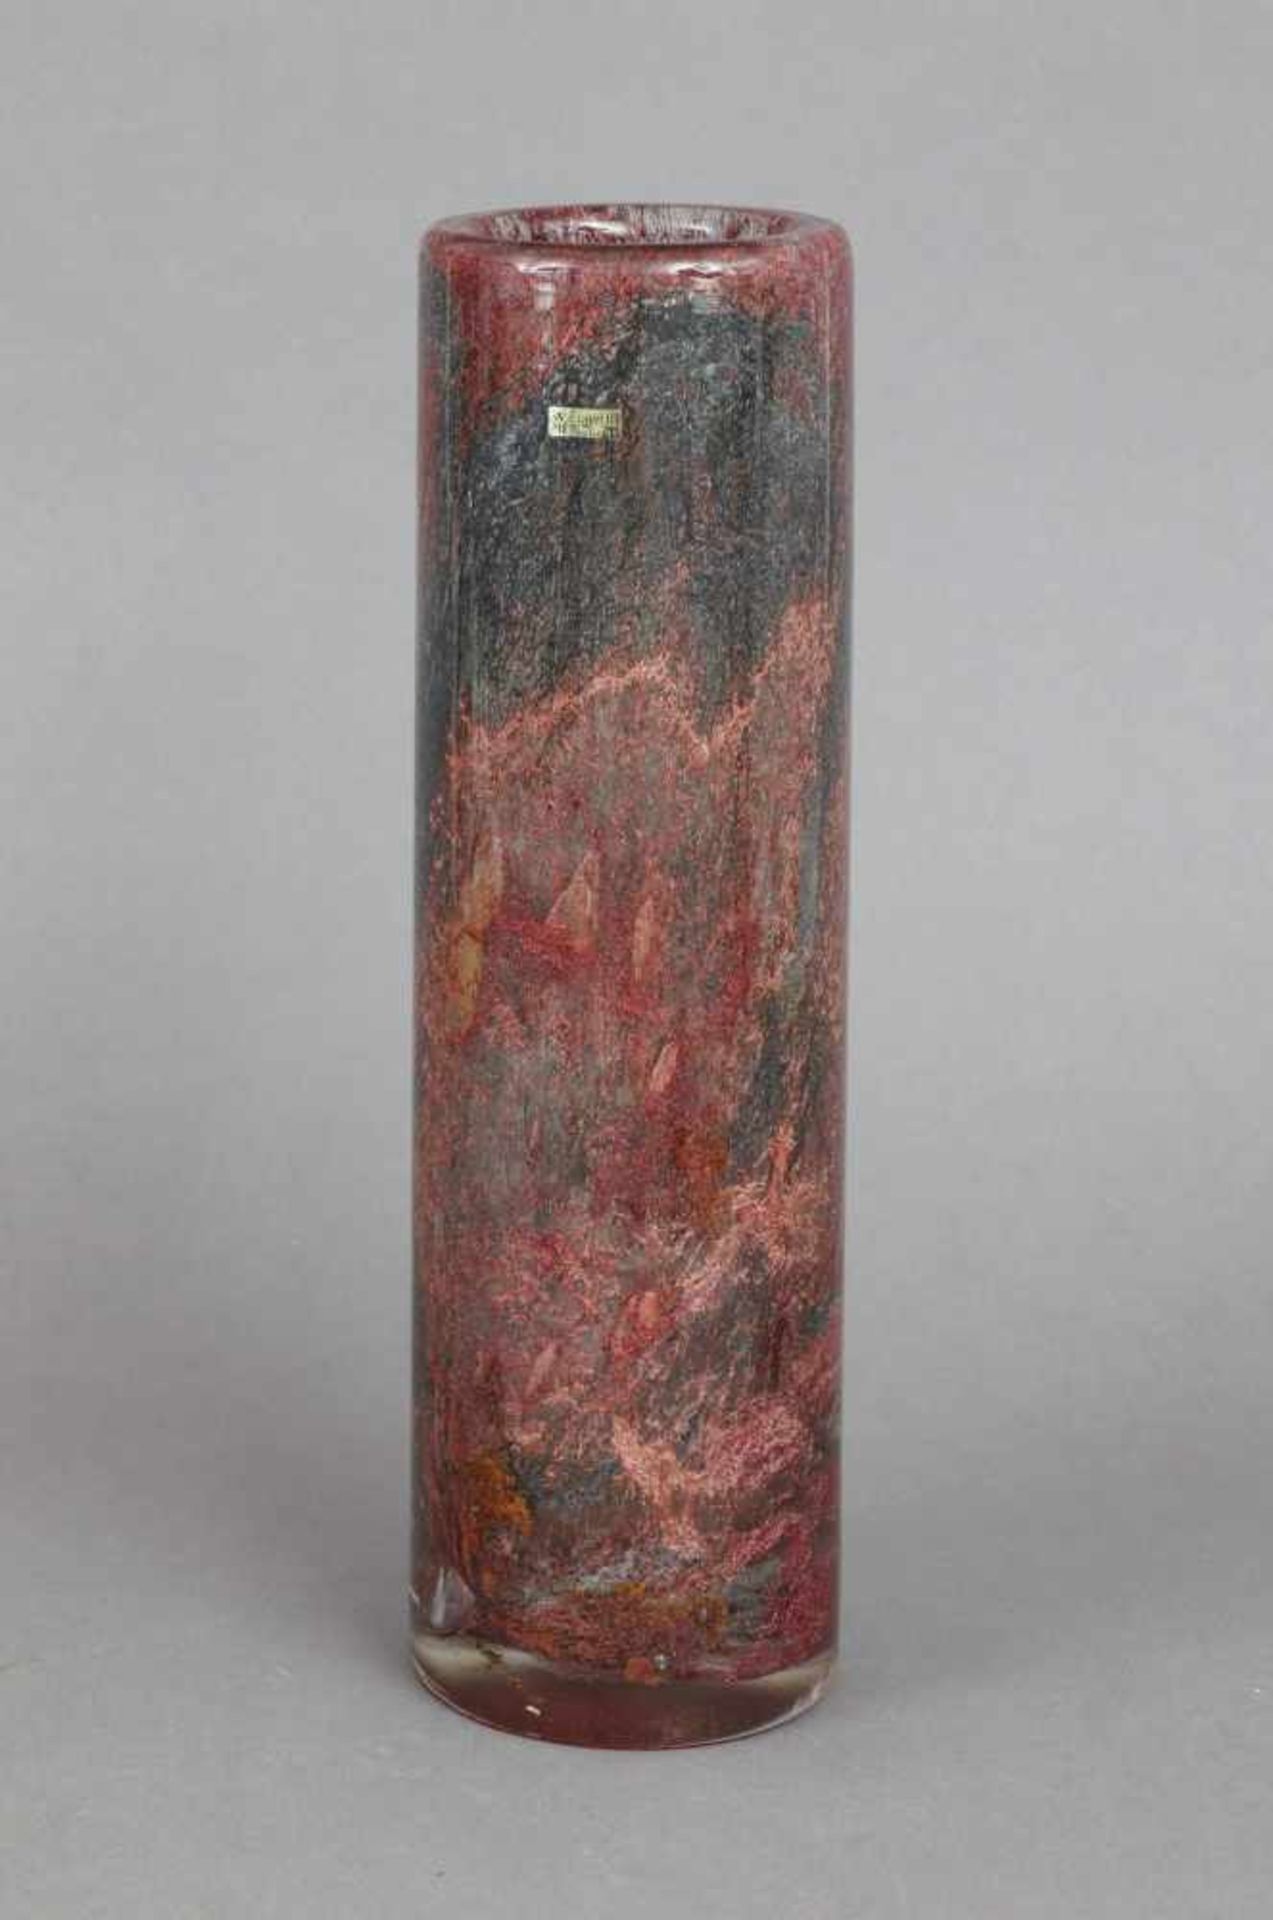 WMF ¨Ikora¨ Stangenvasebraun-grau marmoriert, hohe, zylindrische Form, mit original Aufkleber ¨WMF